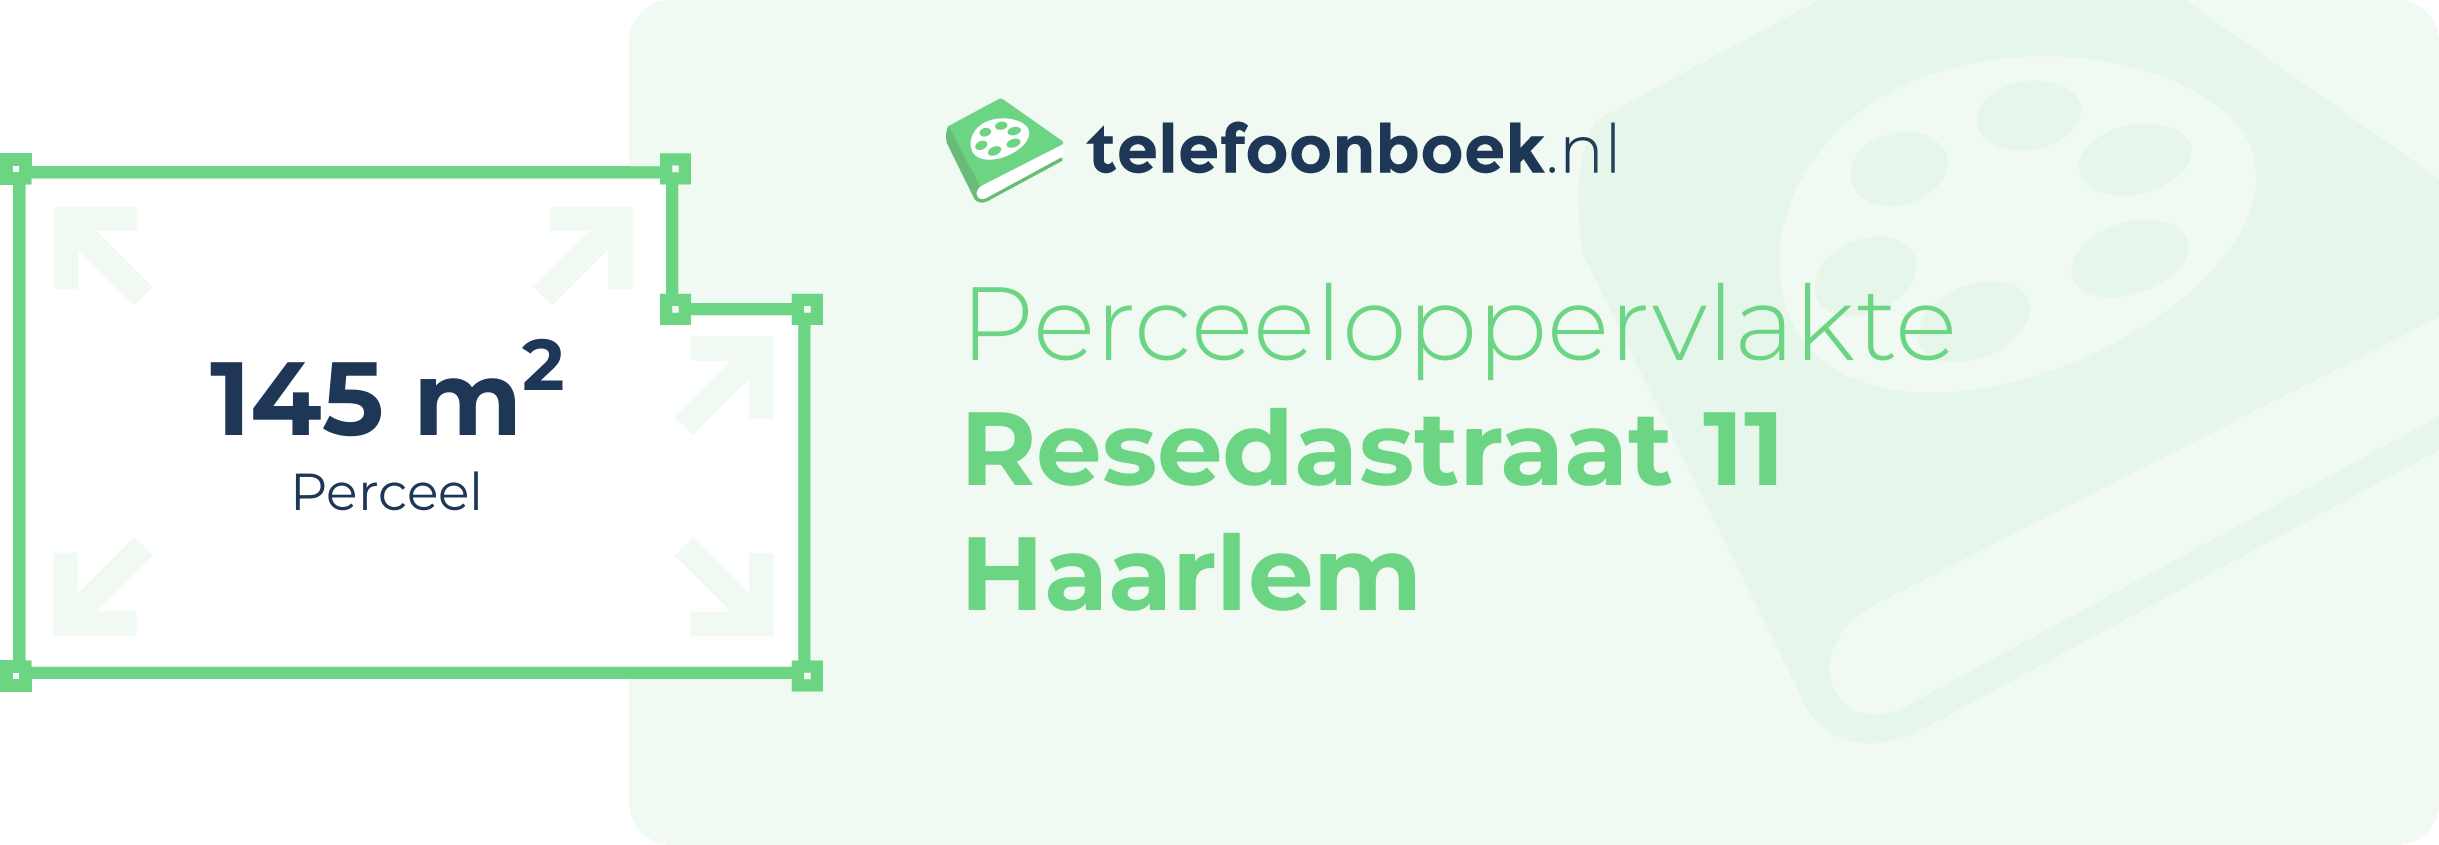 Perceeloppervlakte Resedastraat 11 Haarlem